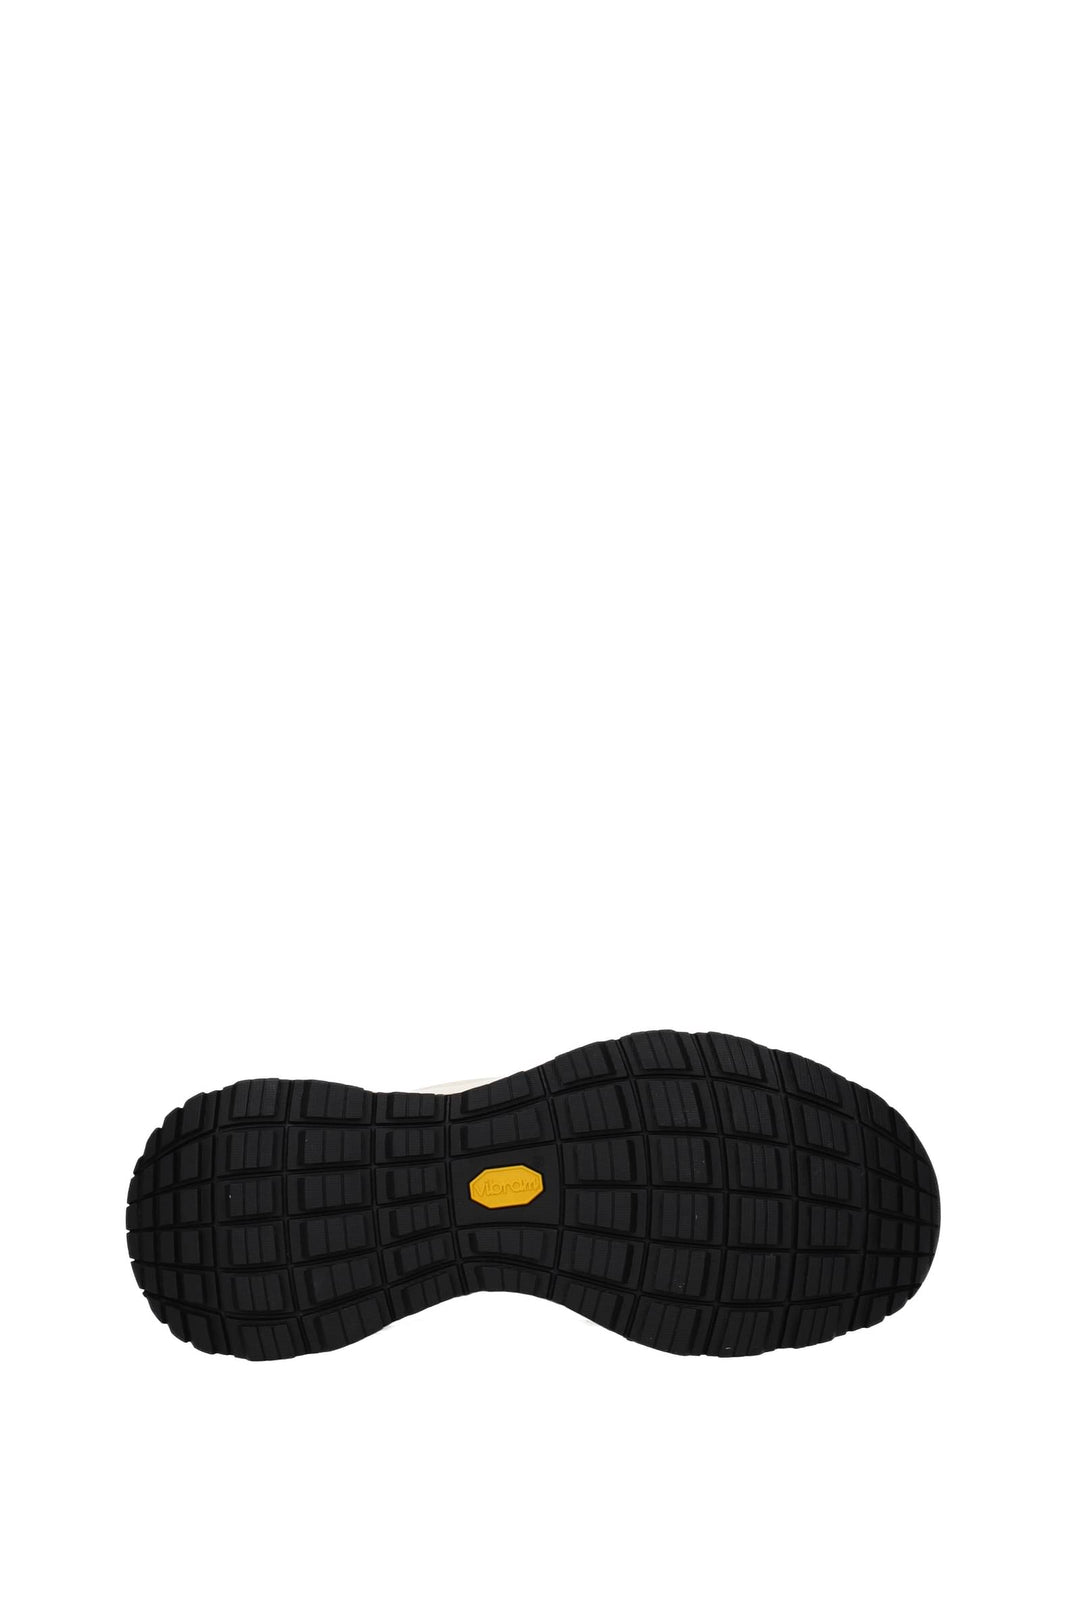 Sneakers Palm Lite Tessuto Beige Marrone Arizona - Moncler - Uomo